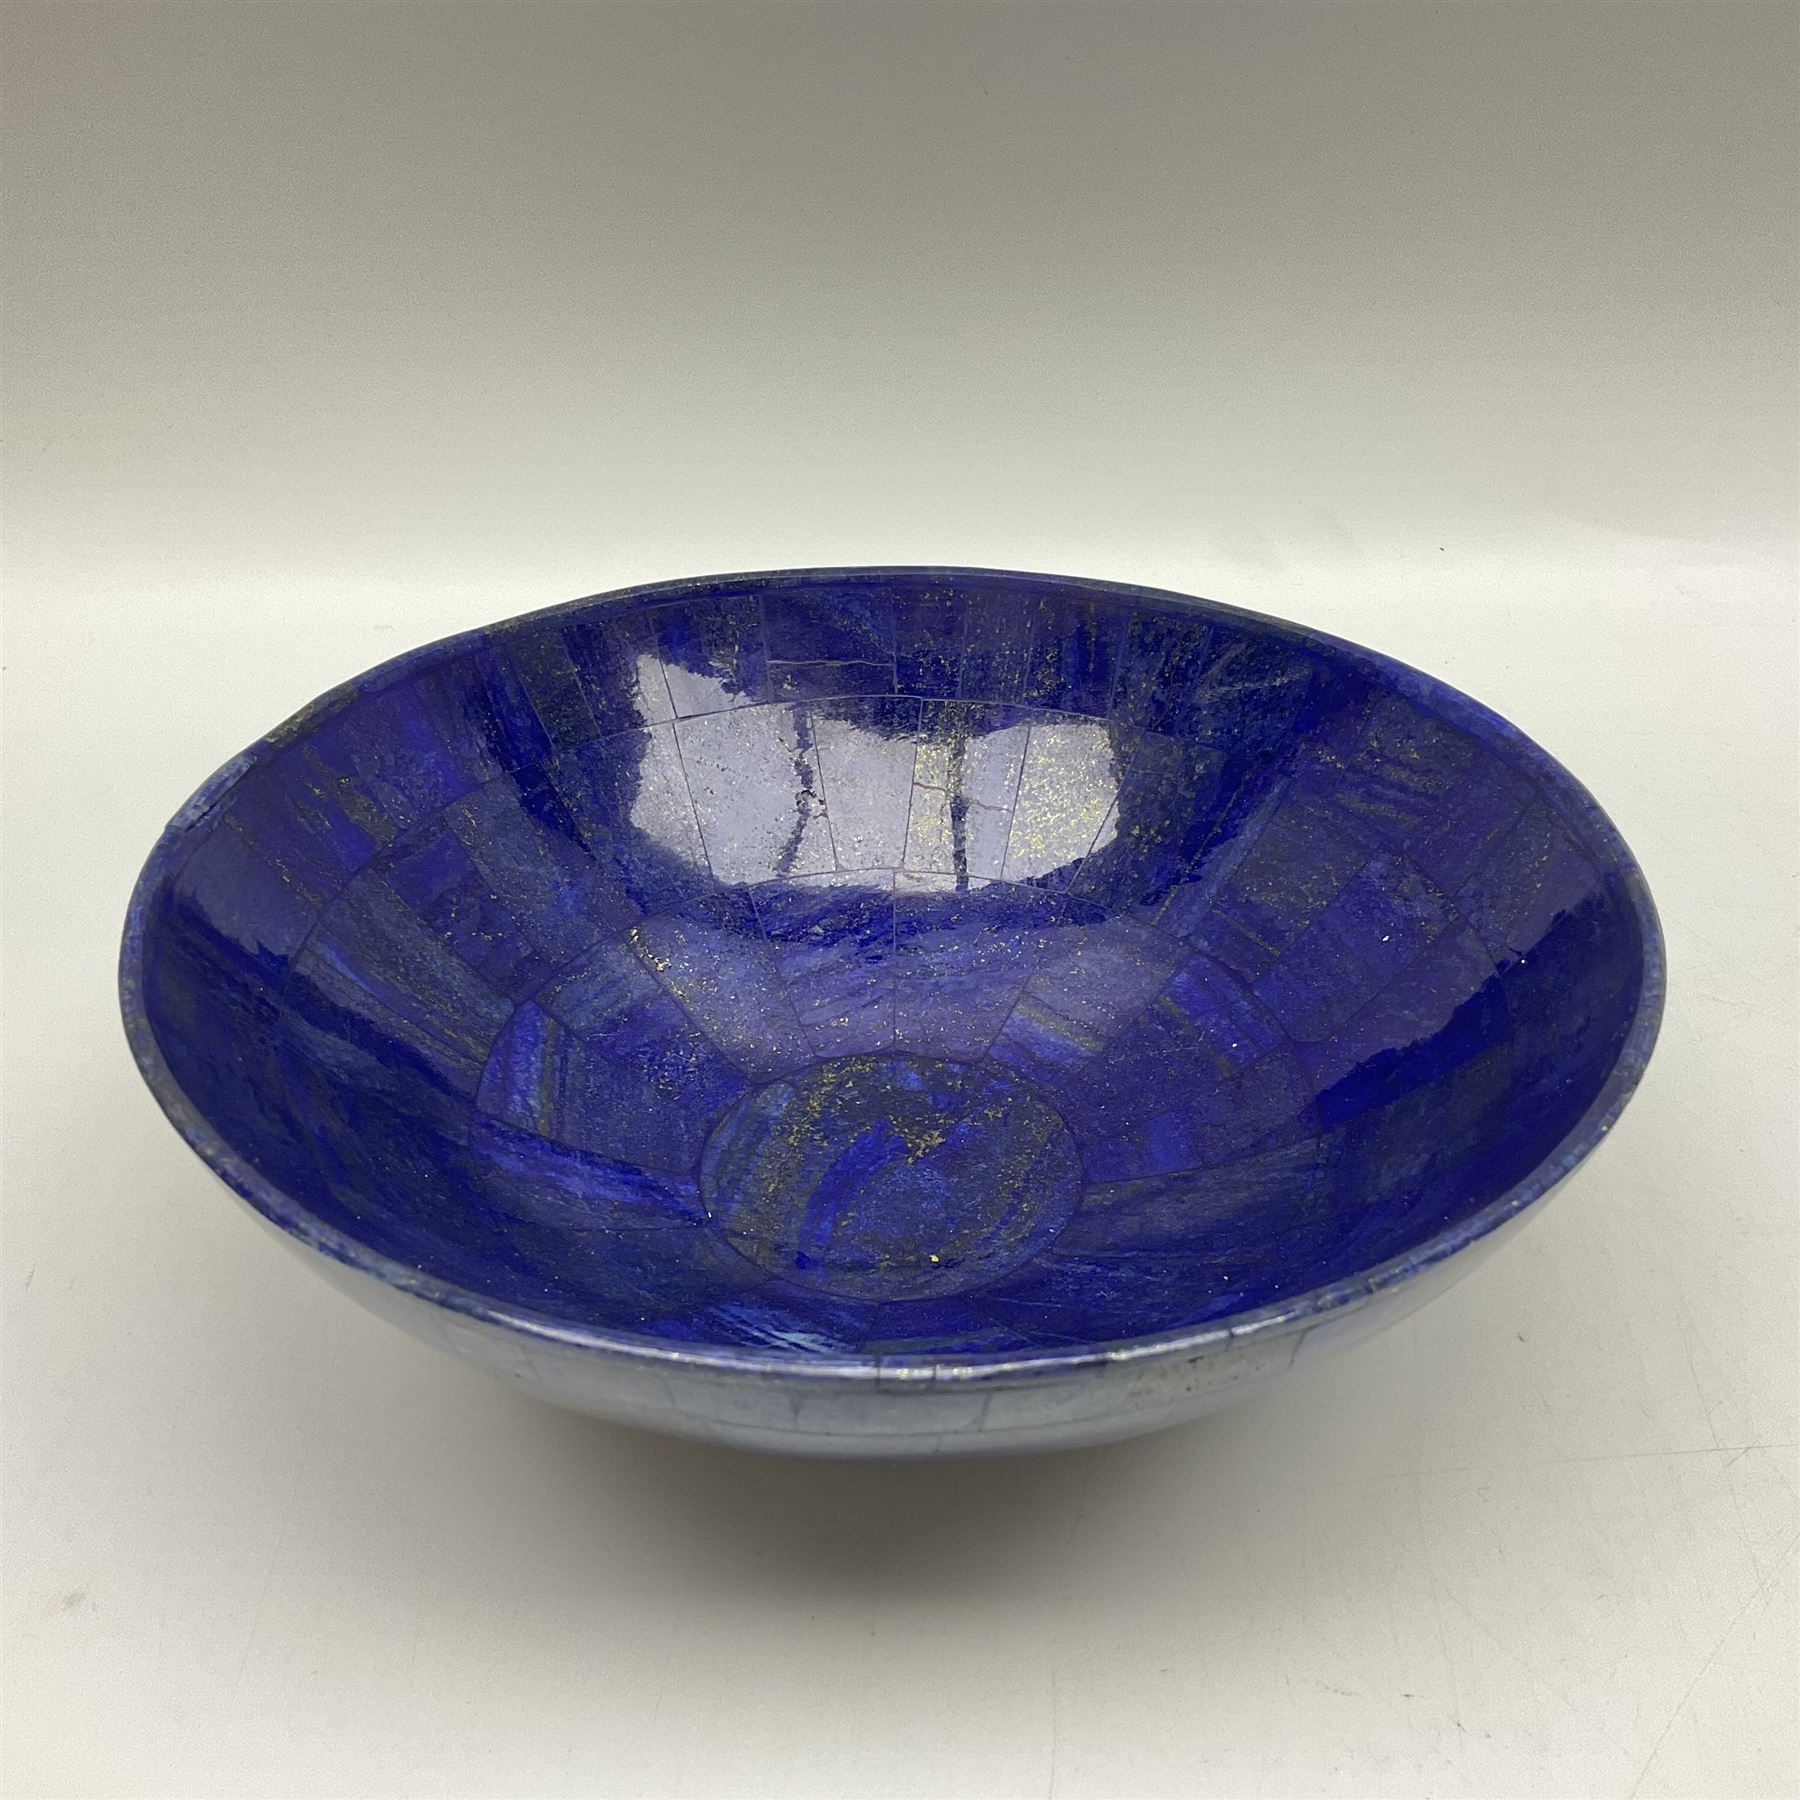 Lapis lazuli mosaic bowl - Image 5 of 7